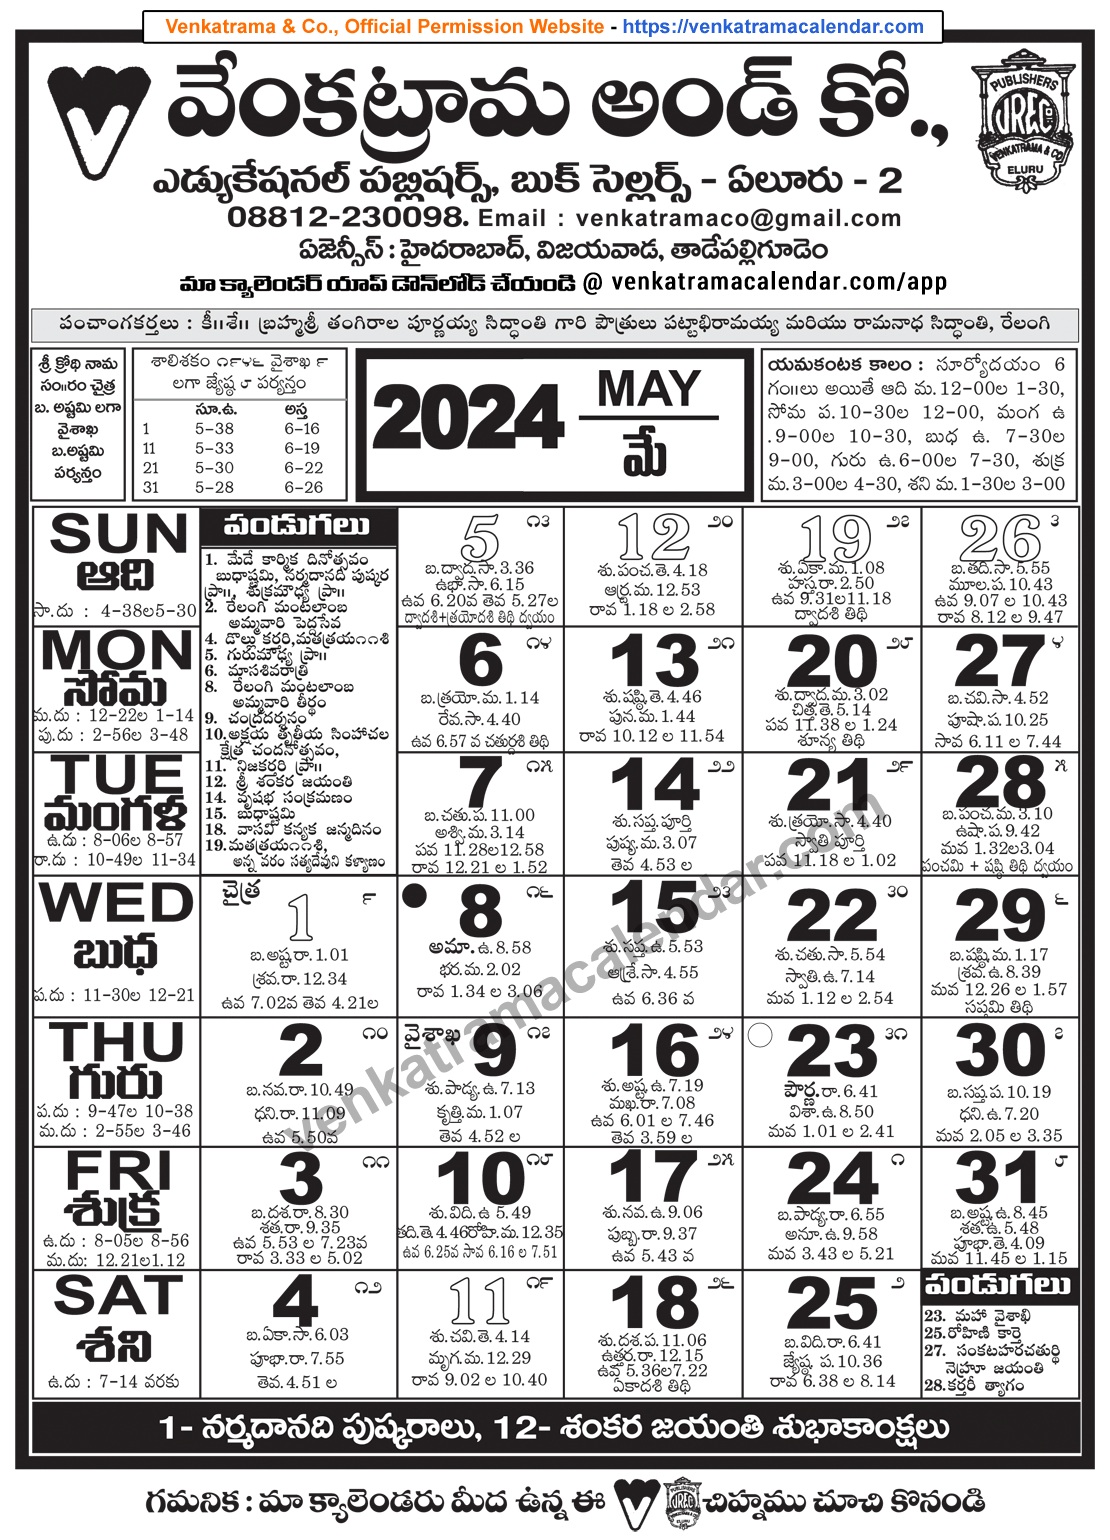 Venkatrama Telugu Calendar 2024 May Venkatrama Telugu Calendar 2024